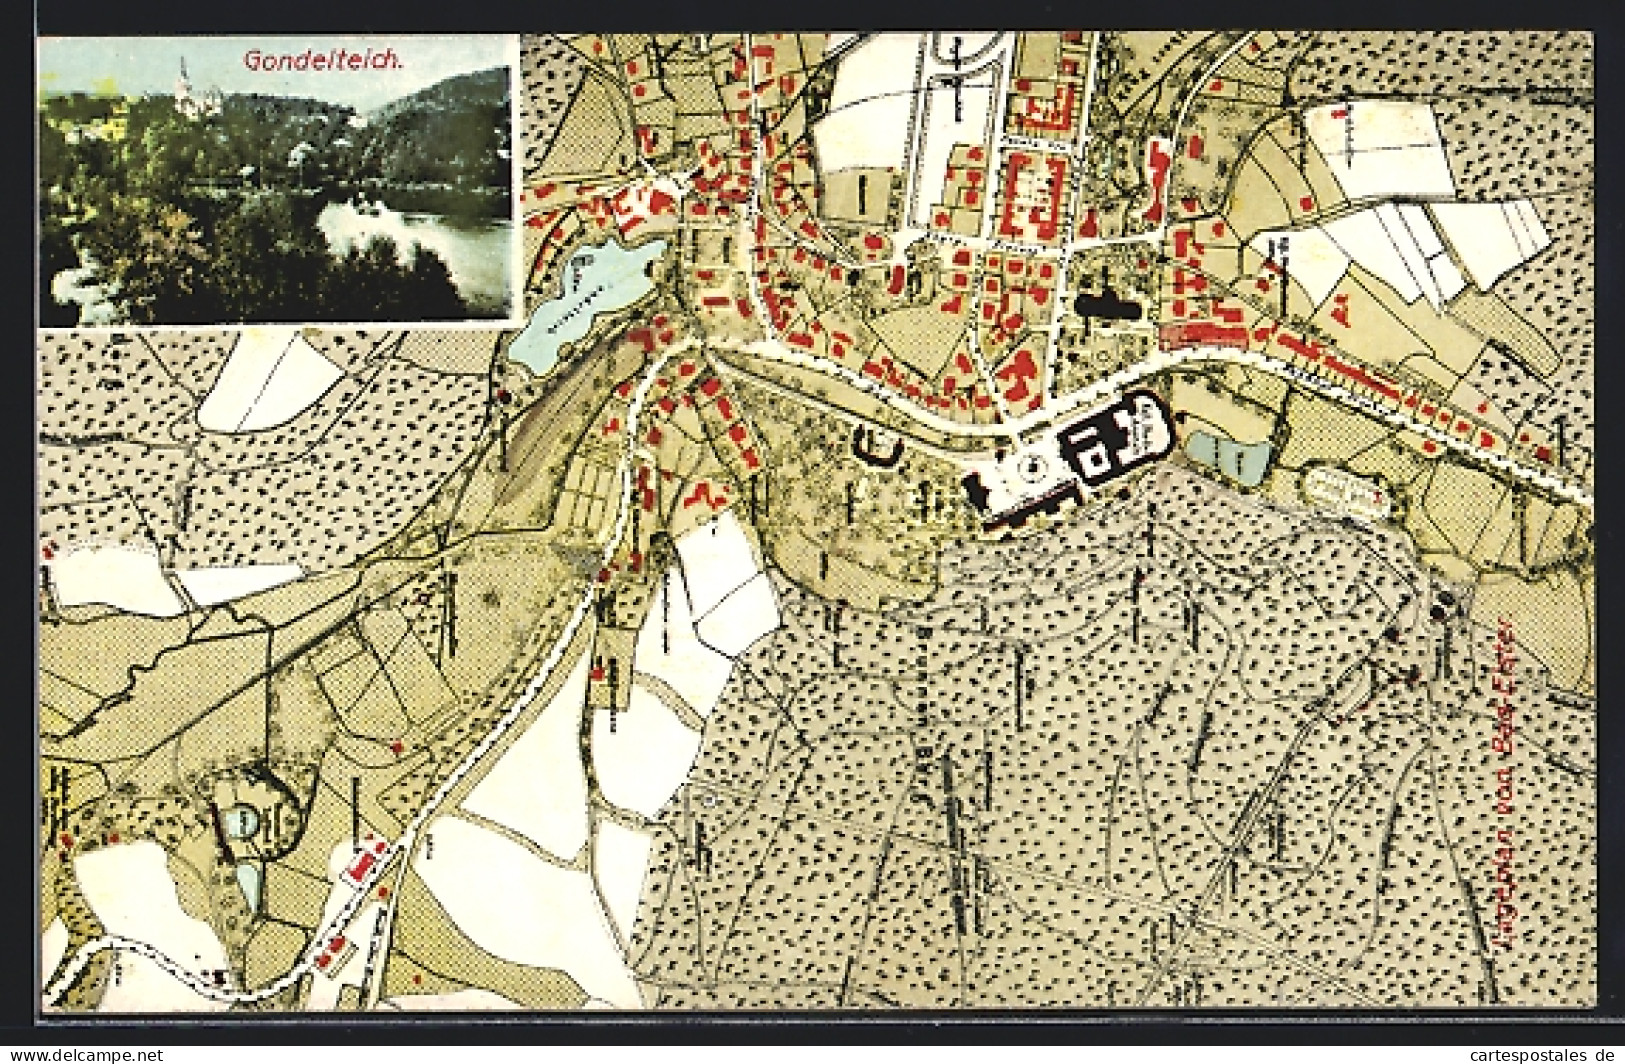 AK Bad Elster, Landkarte, Gondelteich  - Cartes Géographiques